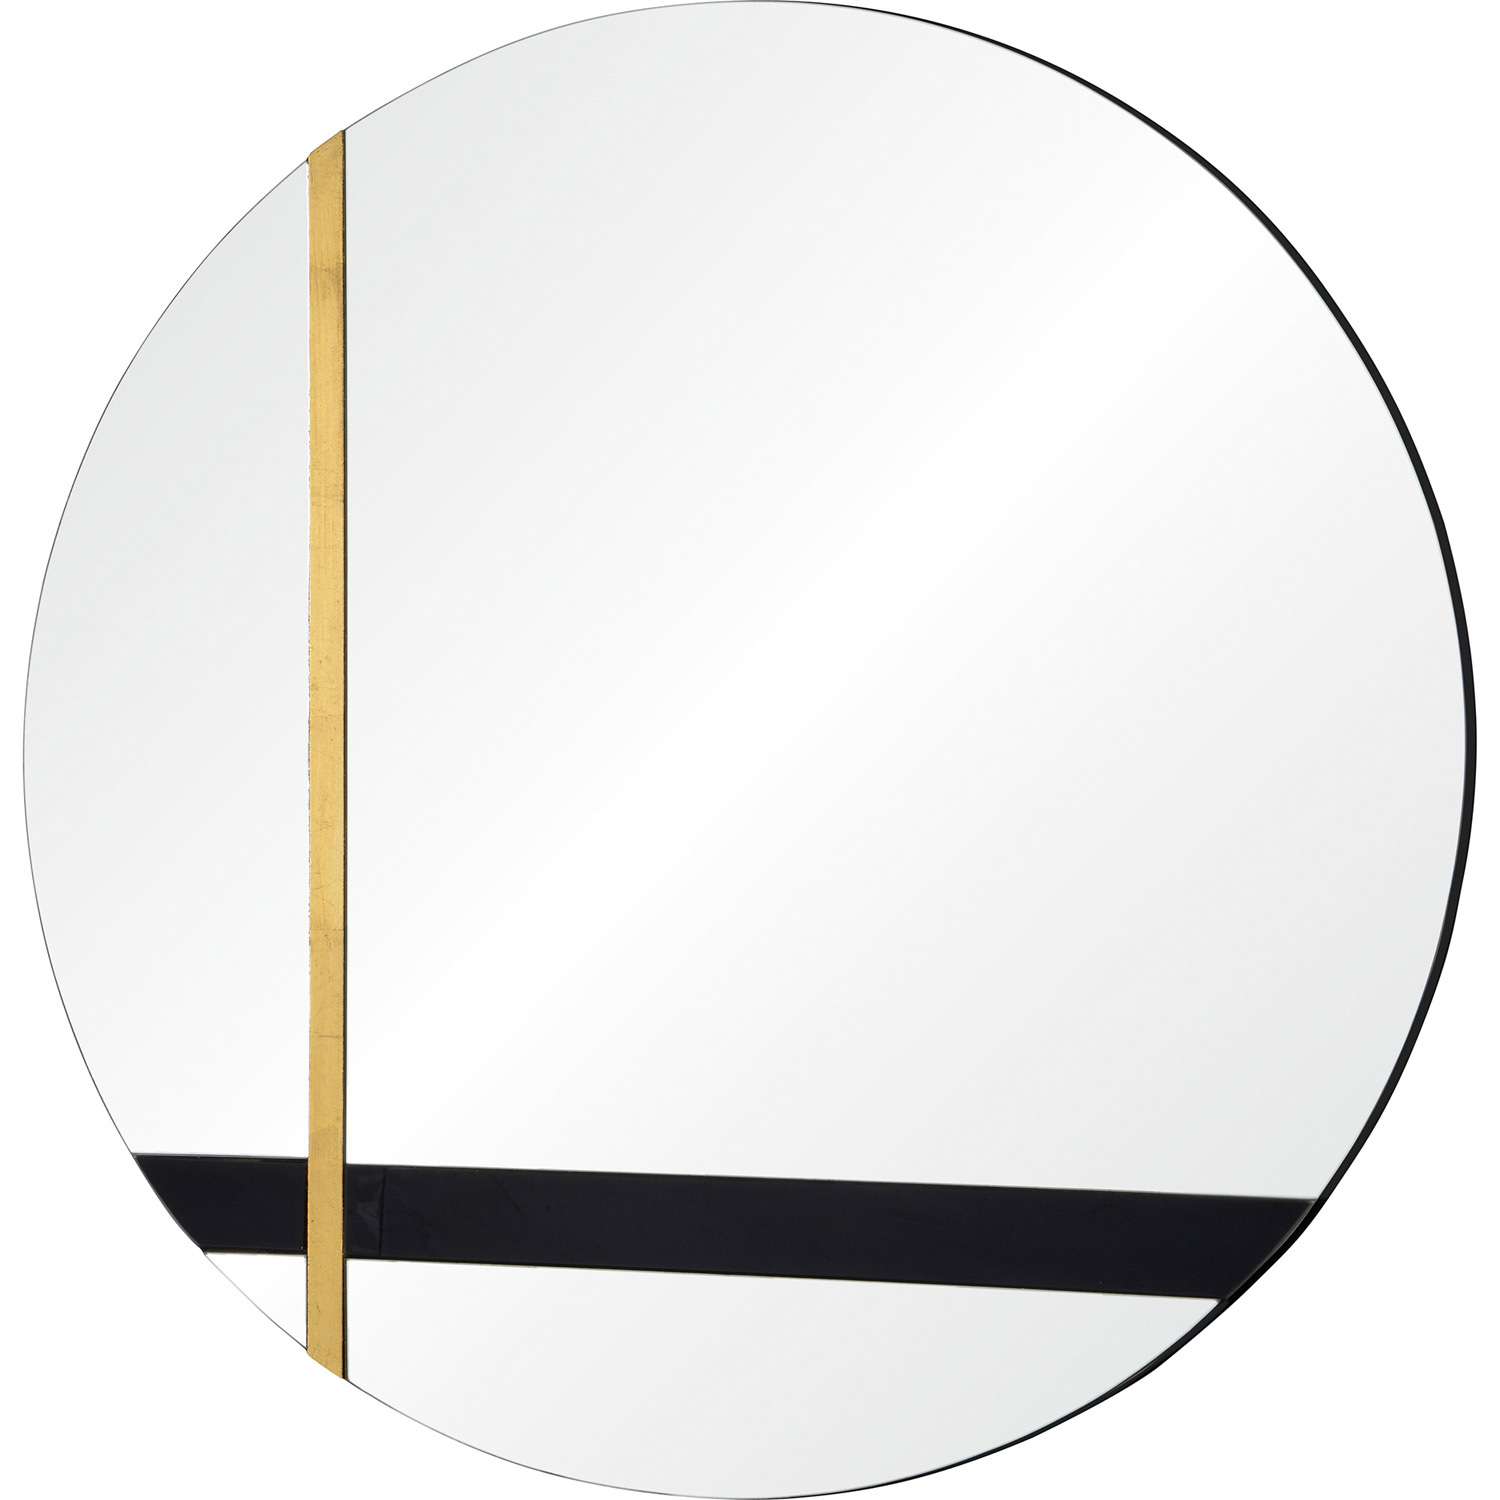 Ren-Wil Gavin Round Mirror - Silver/Black Tint/Gold Leaf